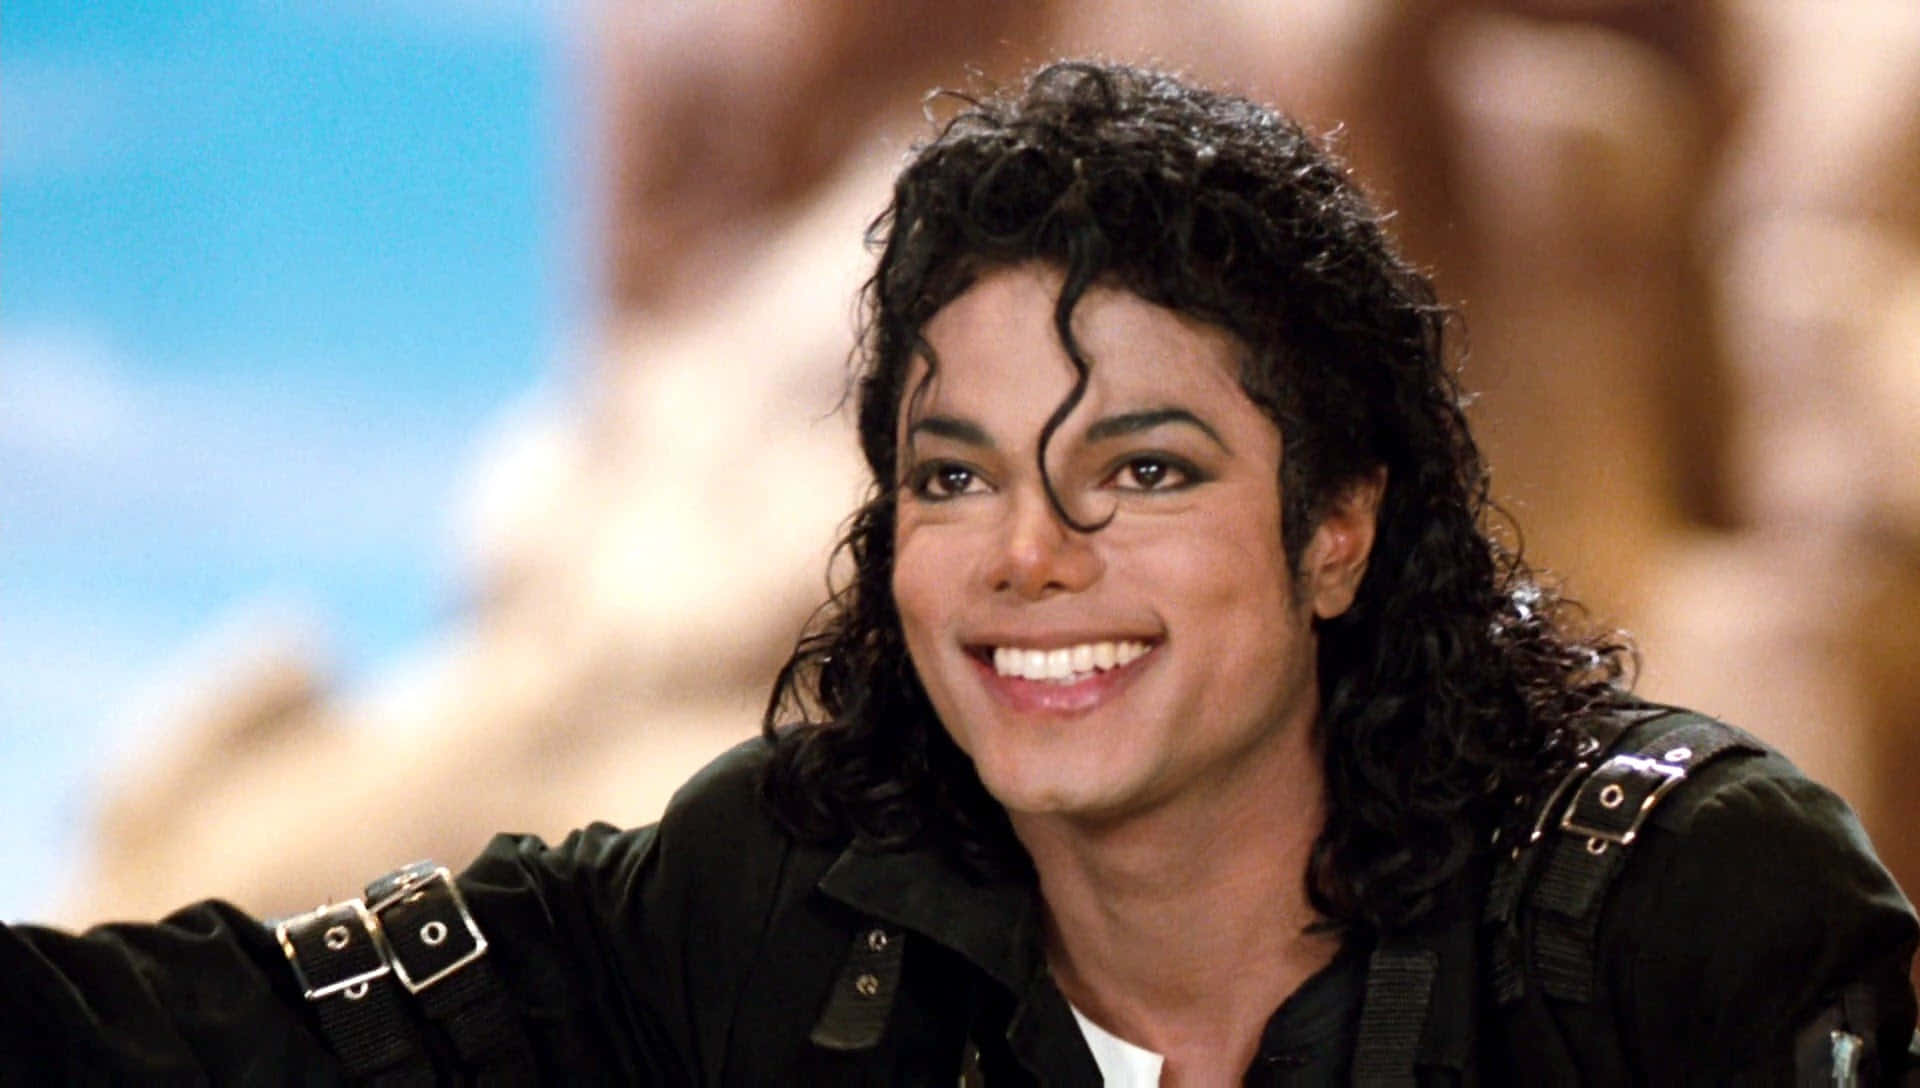 Portala Musica Nel Palmo Della Tua Mano Con L'iphone Di Michael Jackson. Sfondo